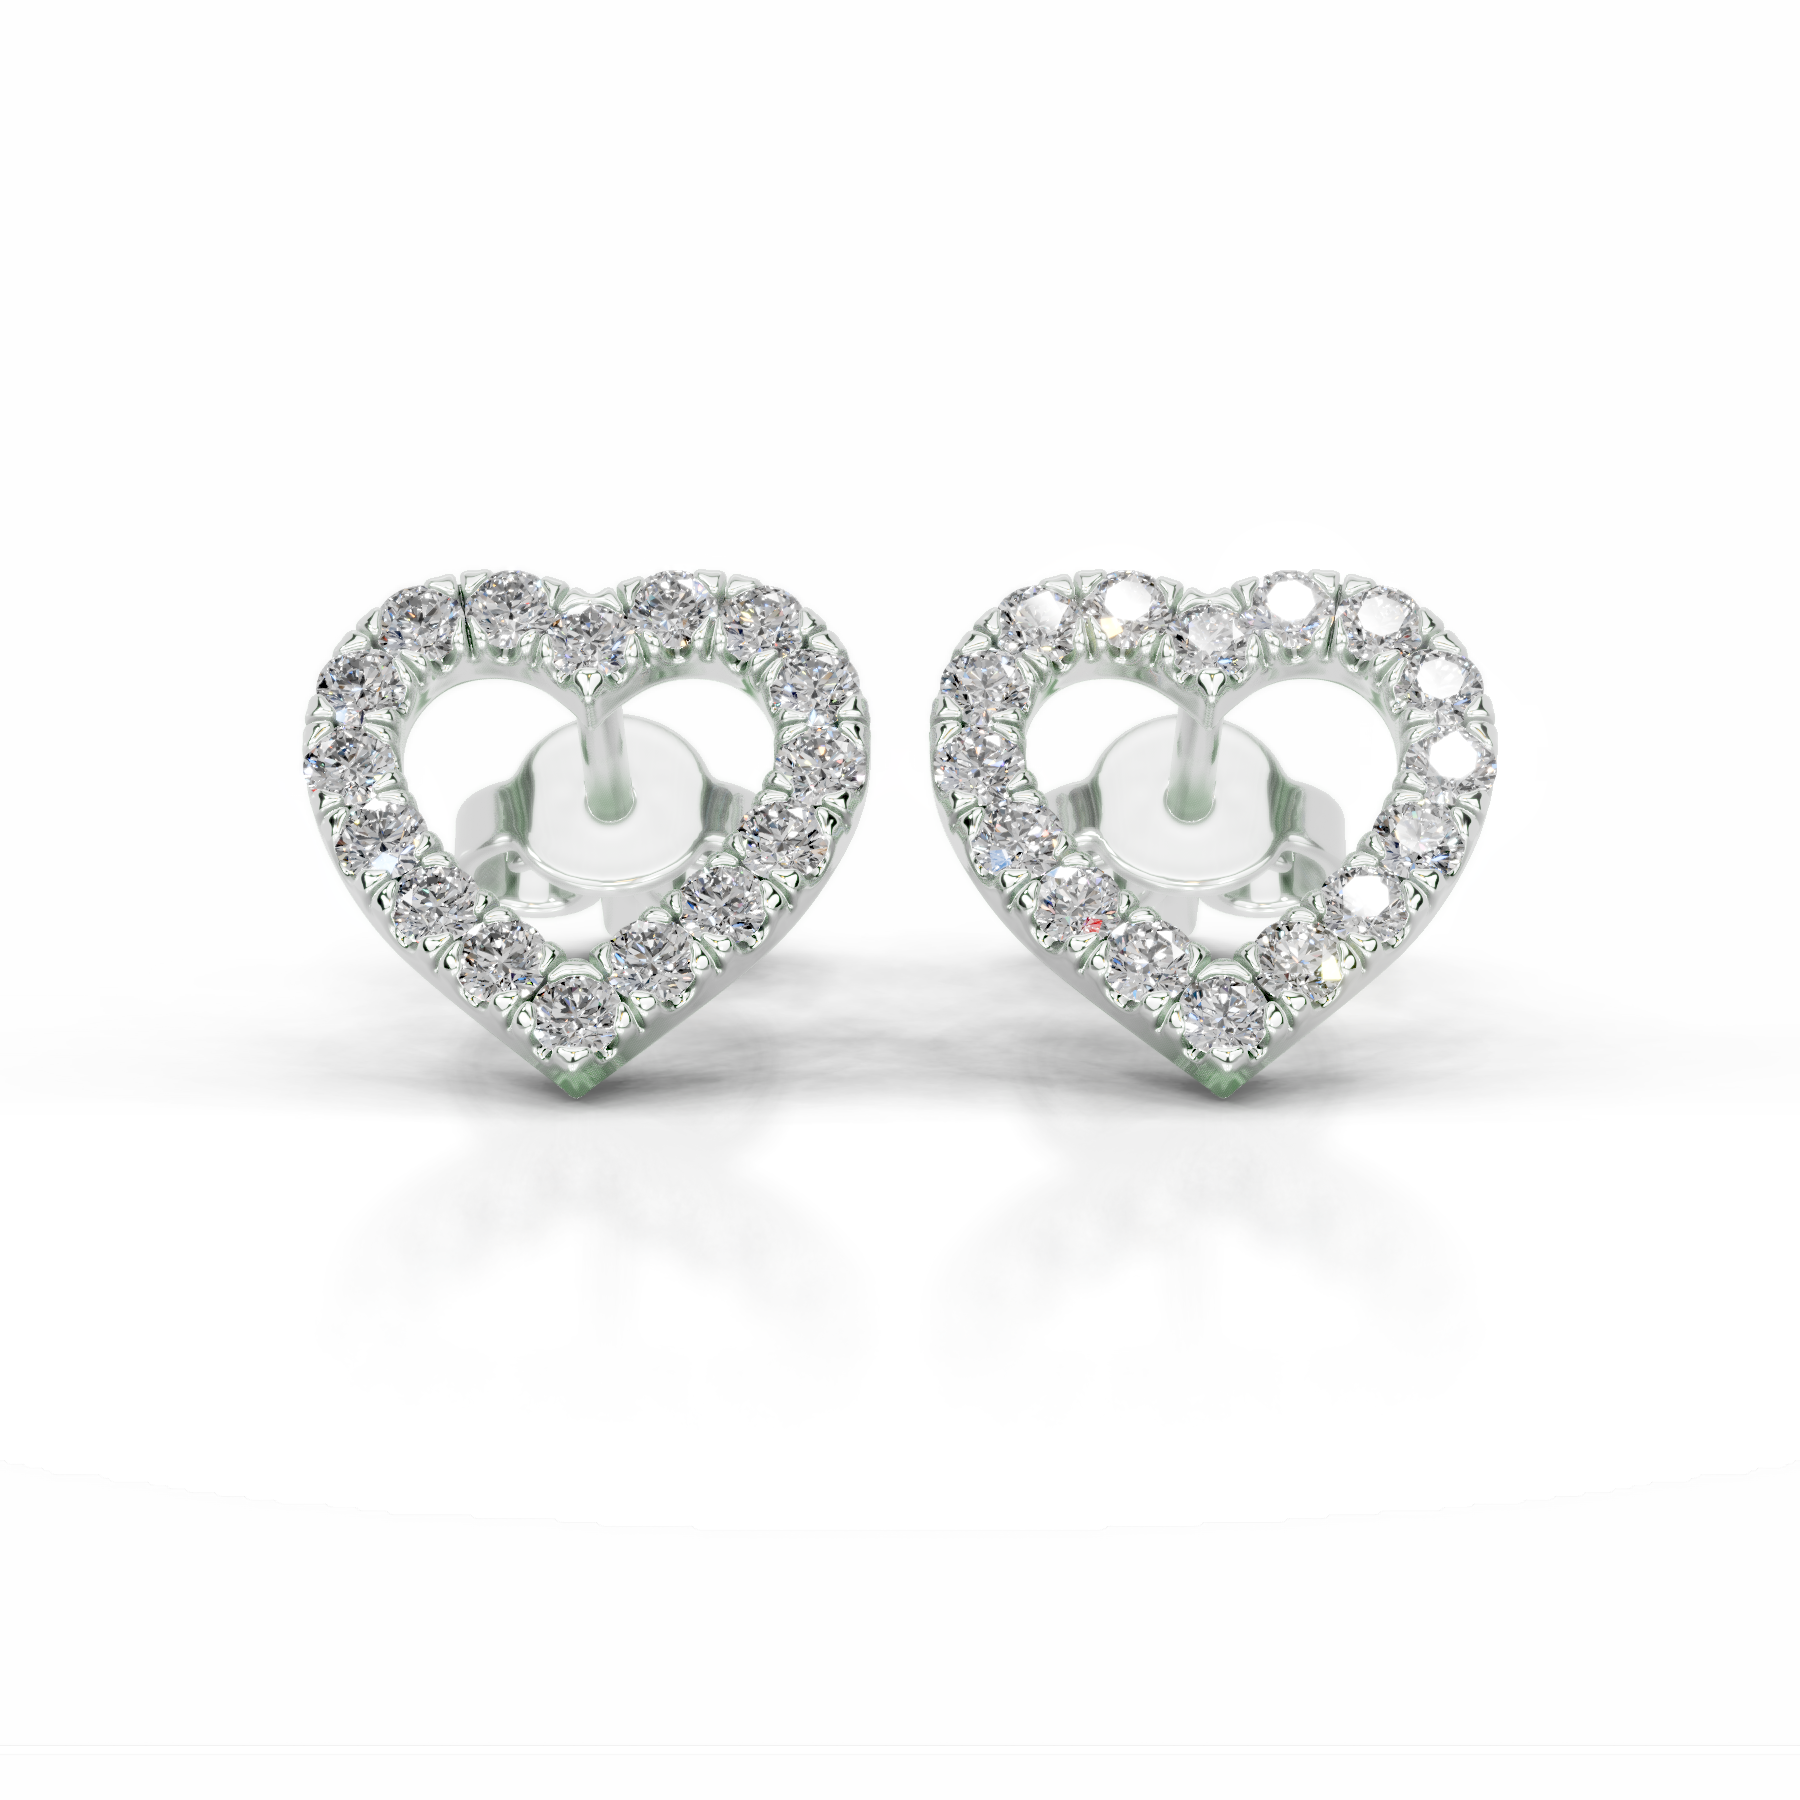 Linda Diamond Studs Earrings   (0.40 Carat) -14K White Gold